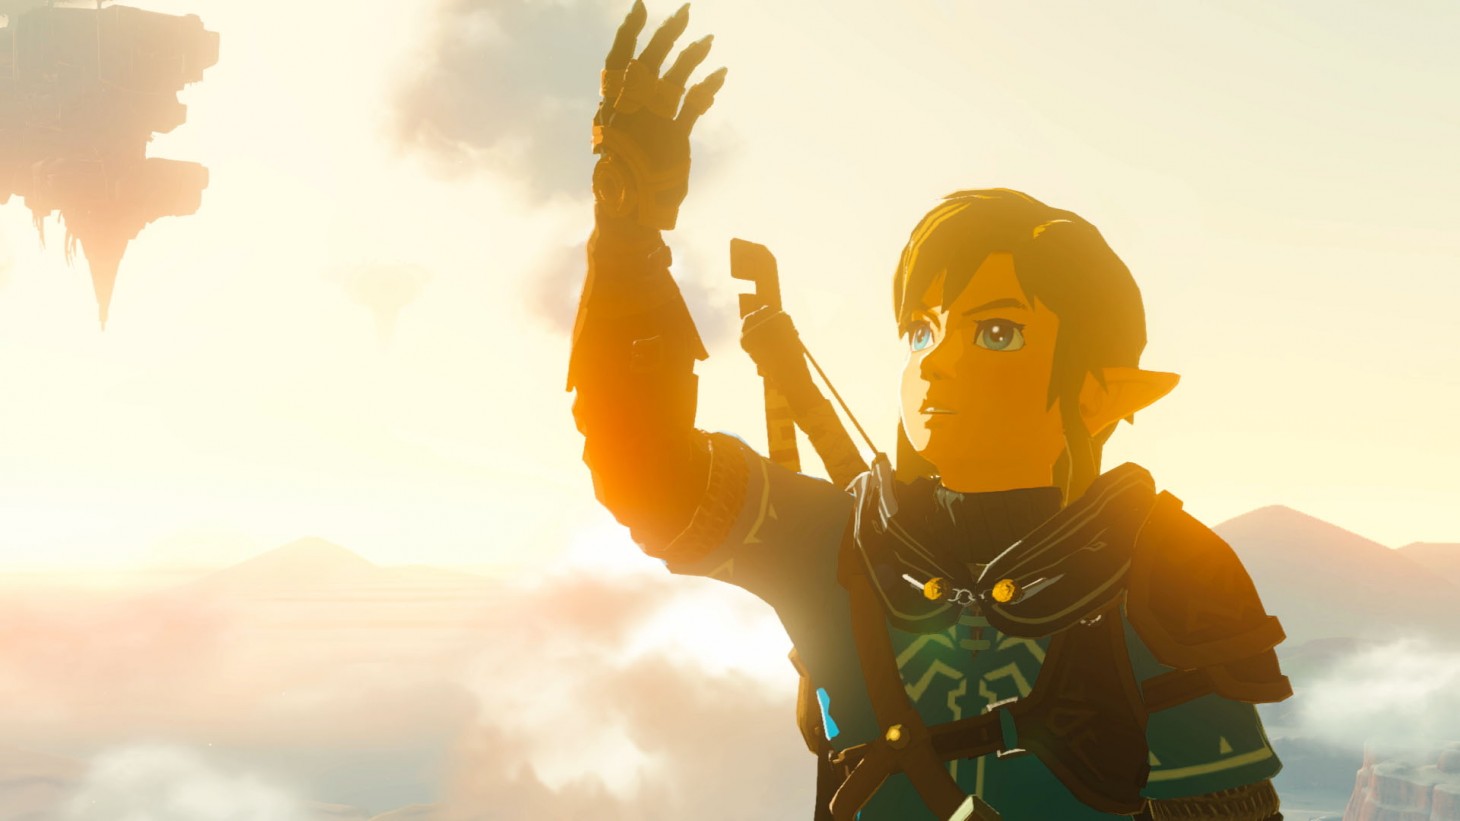 Metacritic - The Legend of Zelda: Link's Awakening